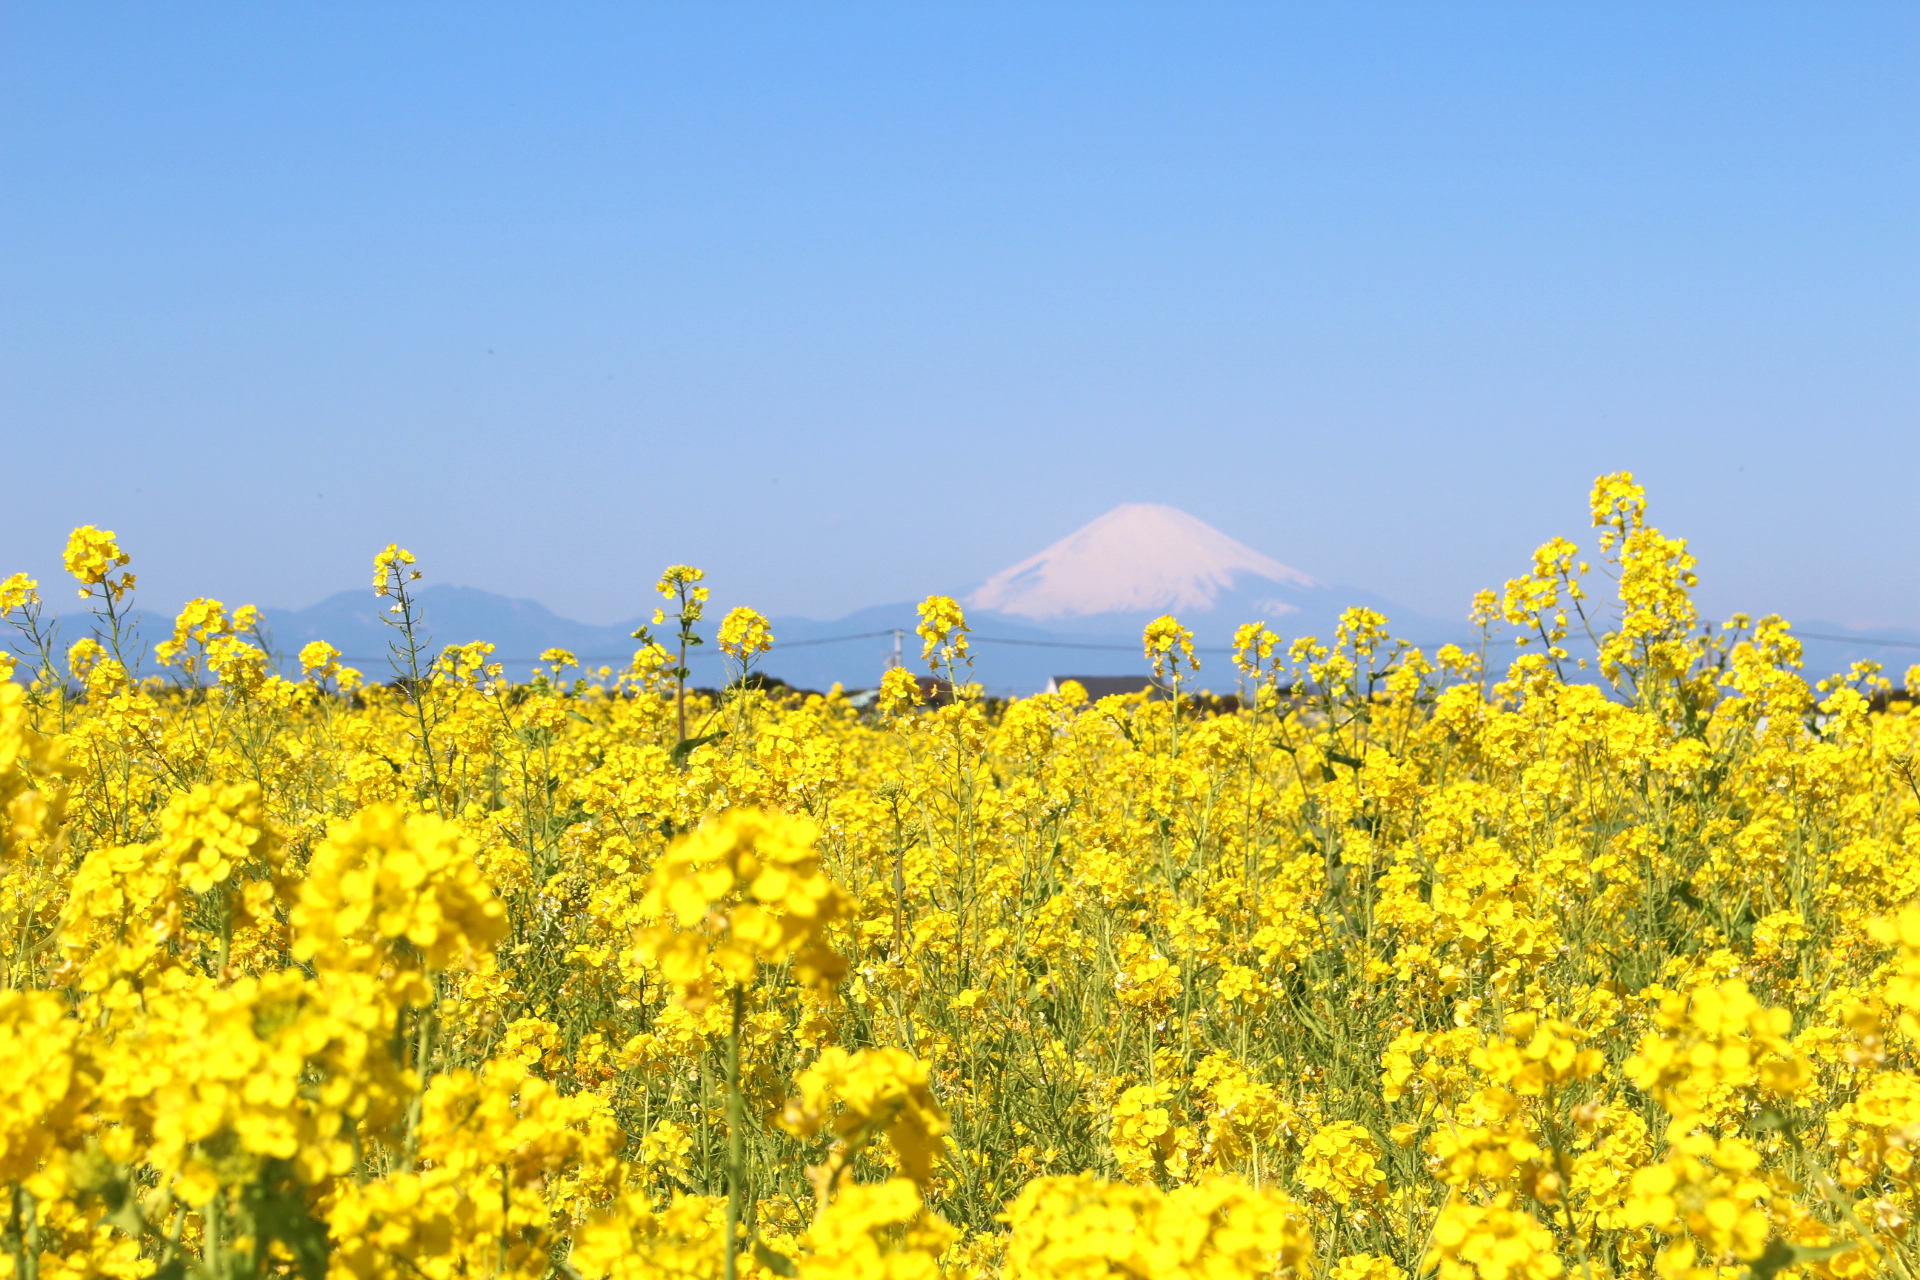 癒しの絶景 冬の花畑と富士山を望む 神奈川 菜の花まつり 開催中 Trip Editor